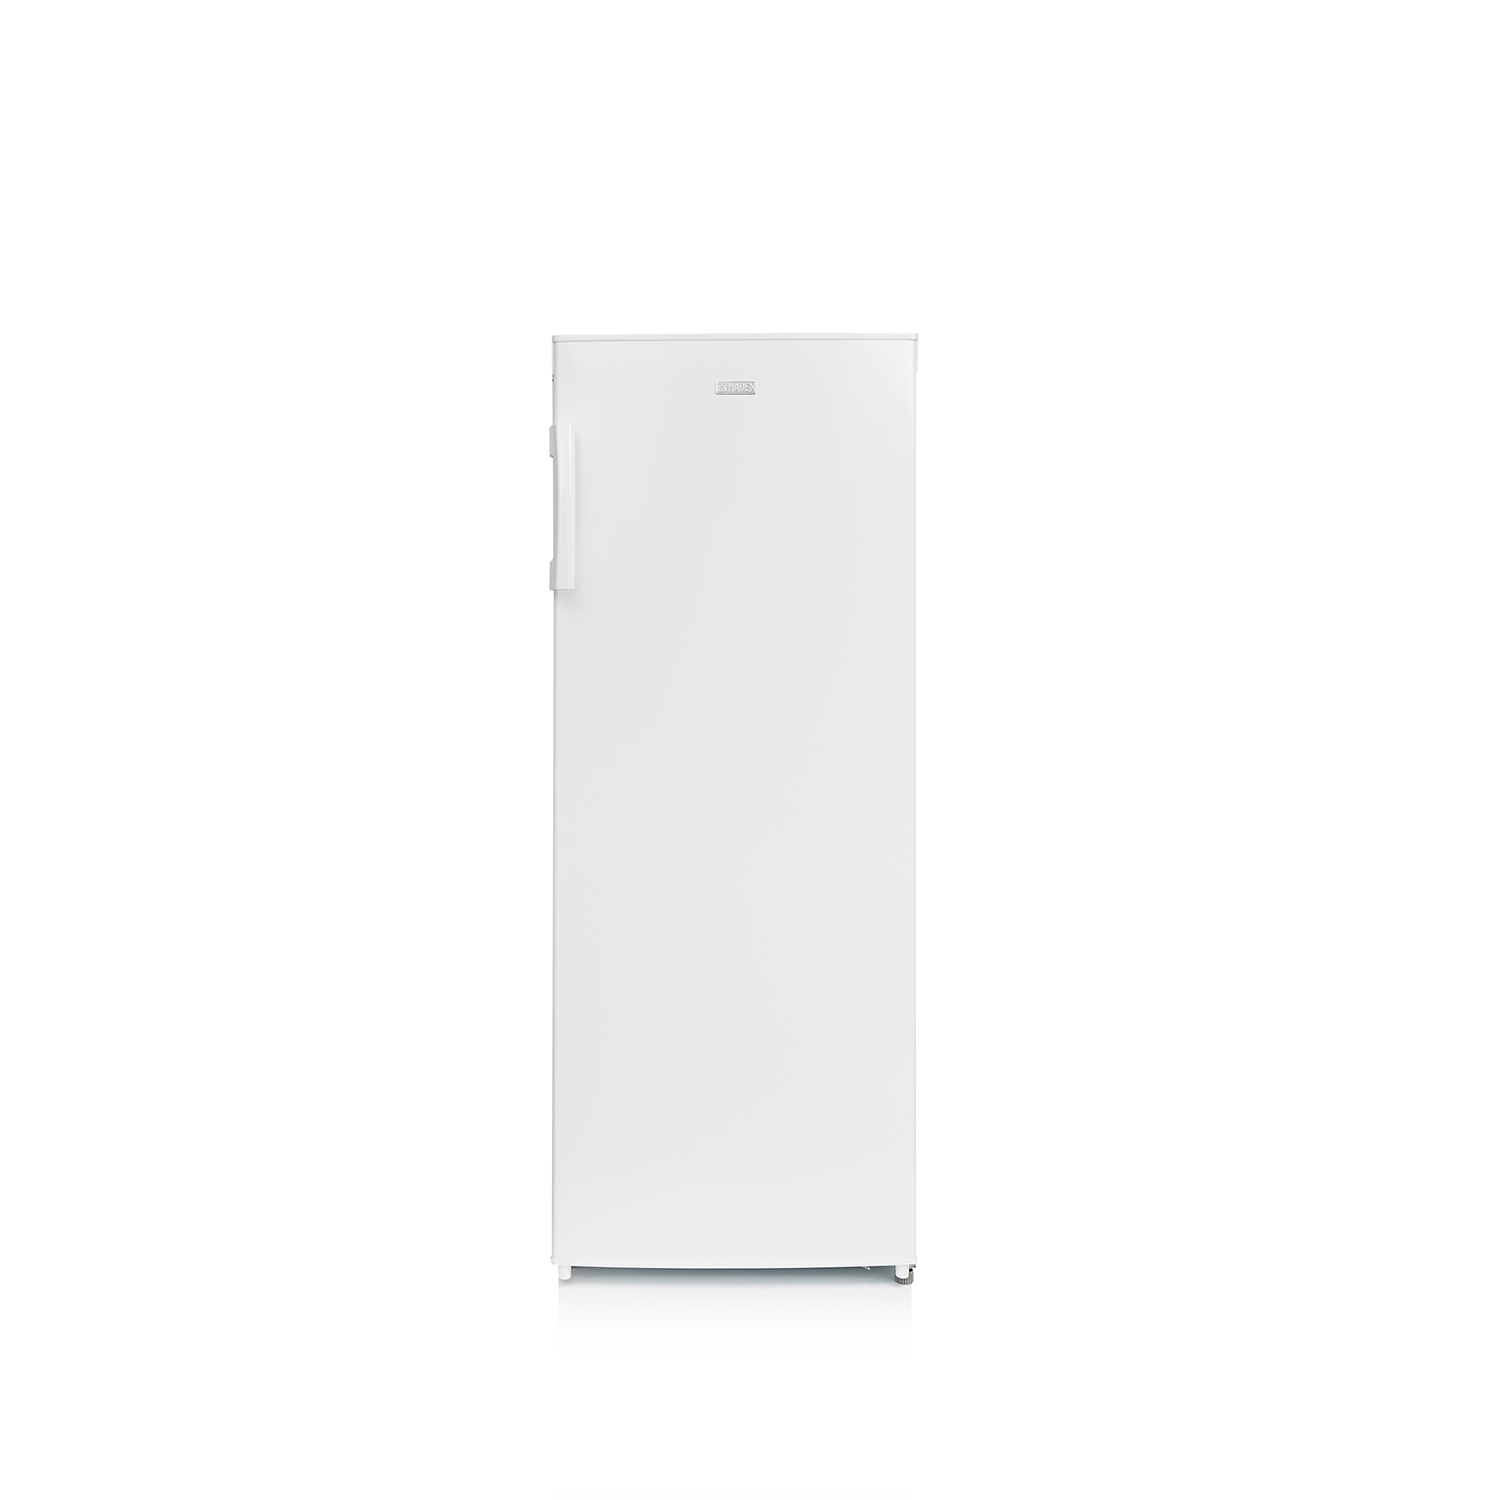 Haden HZ208W 55cm Tall Freezer - White - Static - 1